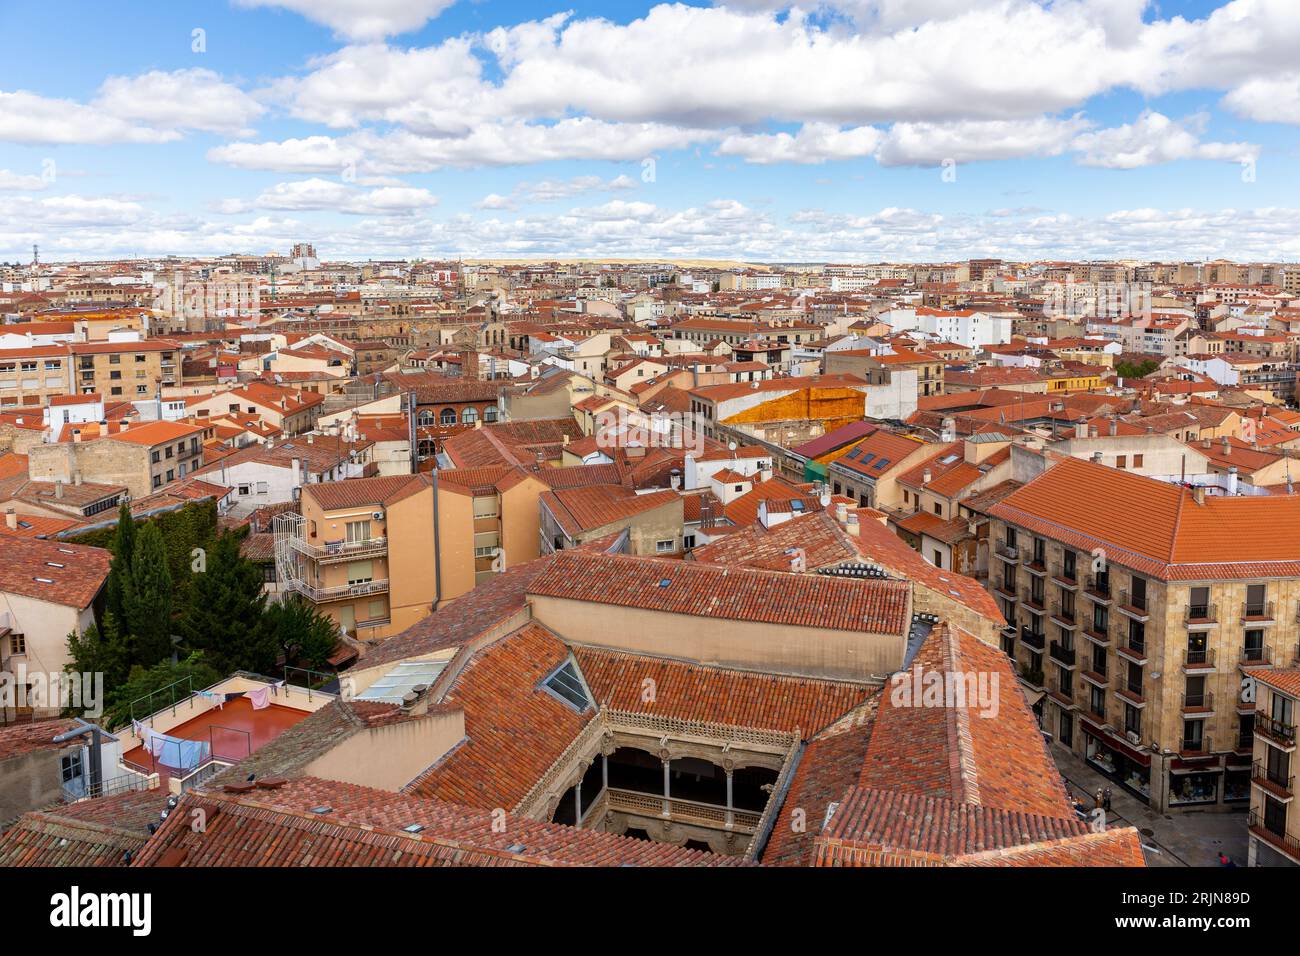 Skyline di Salamanca con cortile Casa de las Conchas, architettura medievale spagnola, tetti in piastrelle arancioni, strade, vista dalla torre la Clerecia. Foto Stock